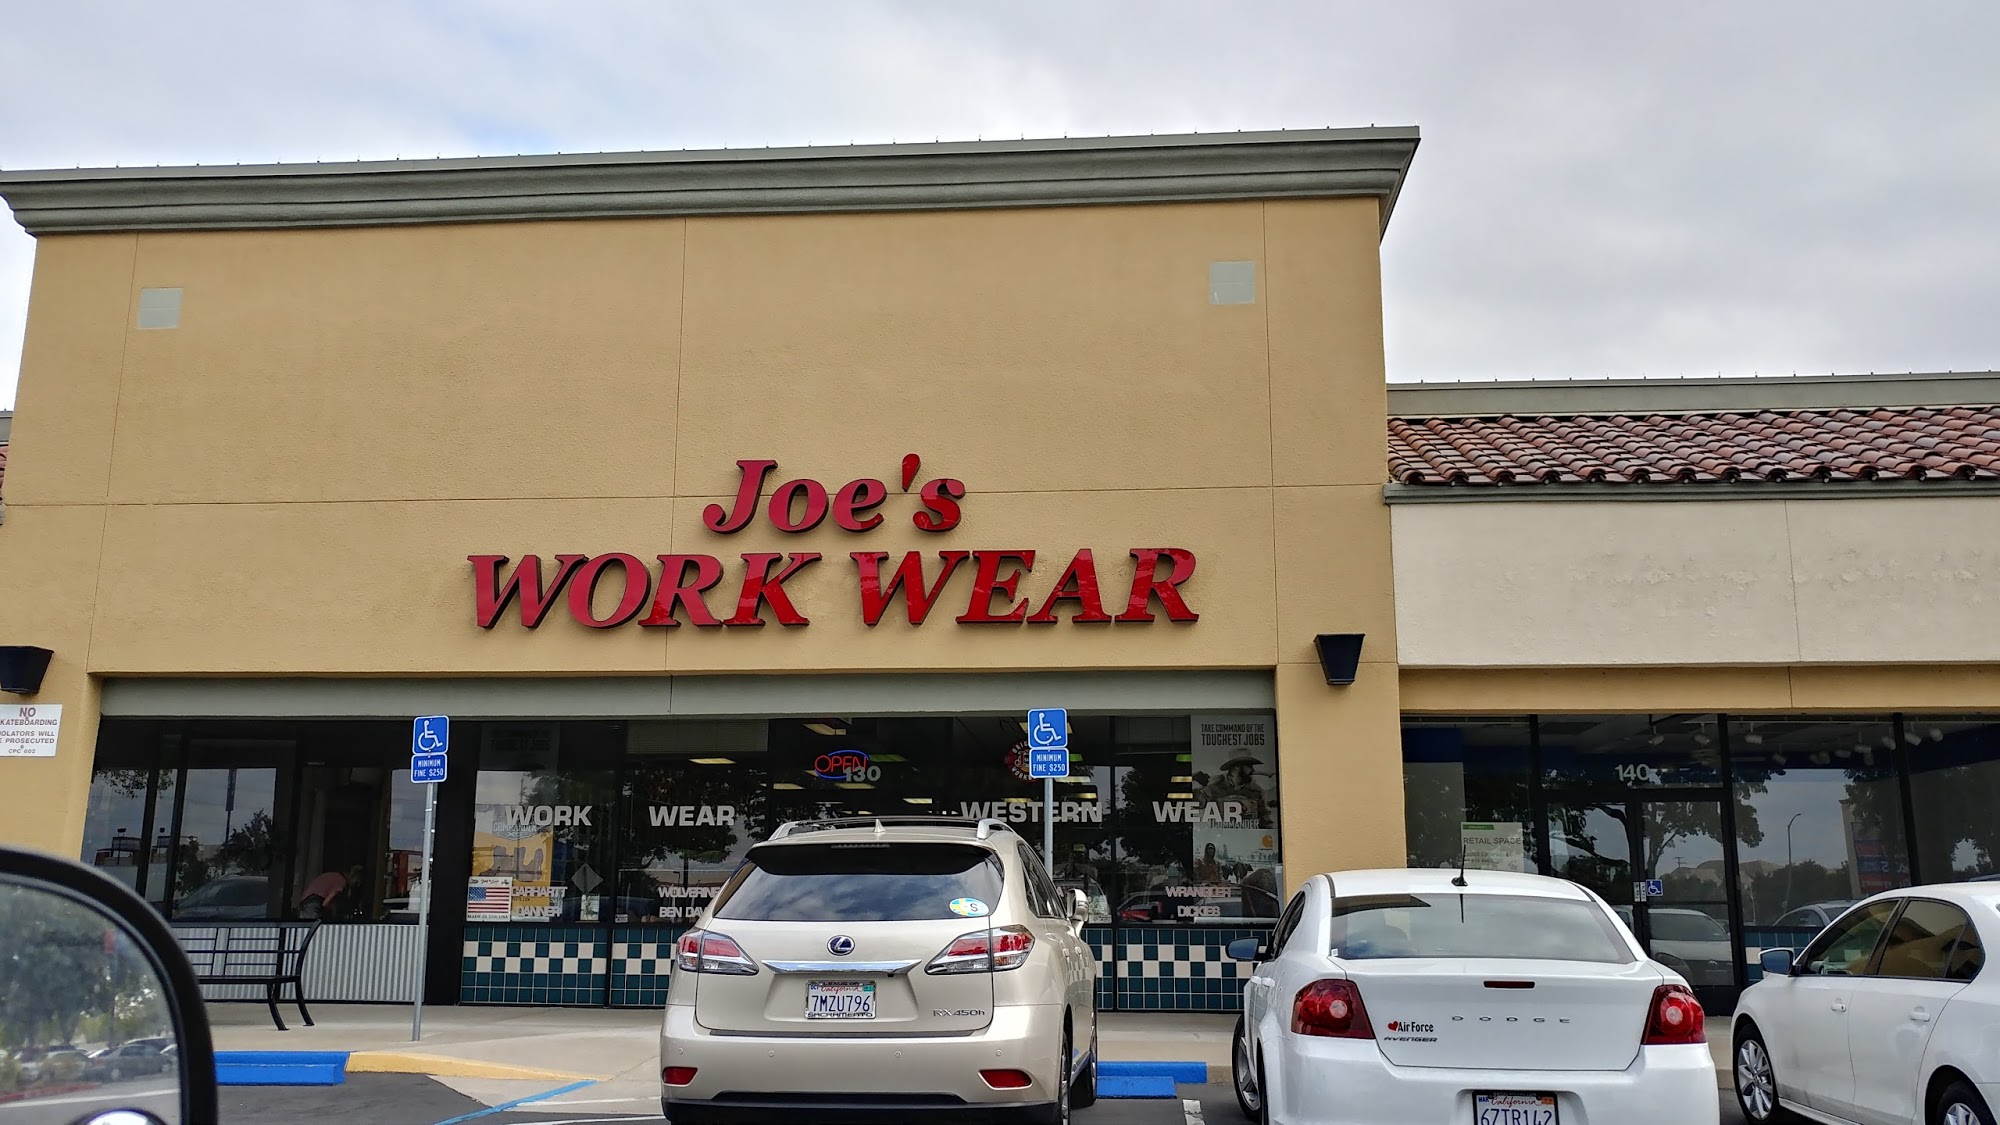 Joe's Work Wear